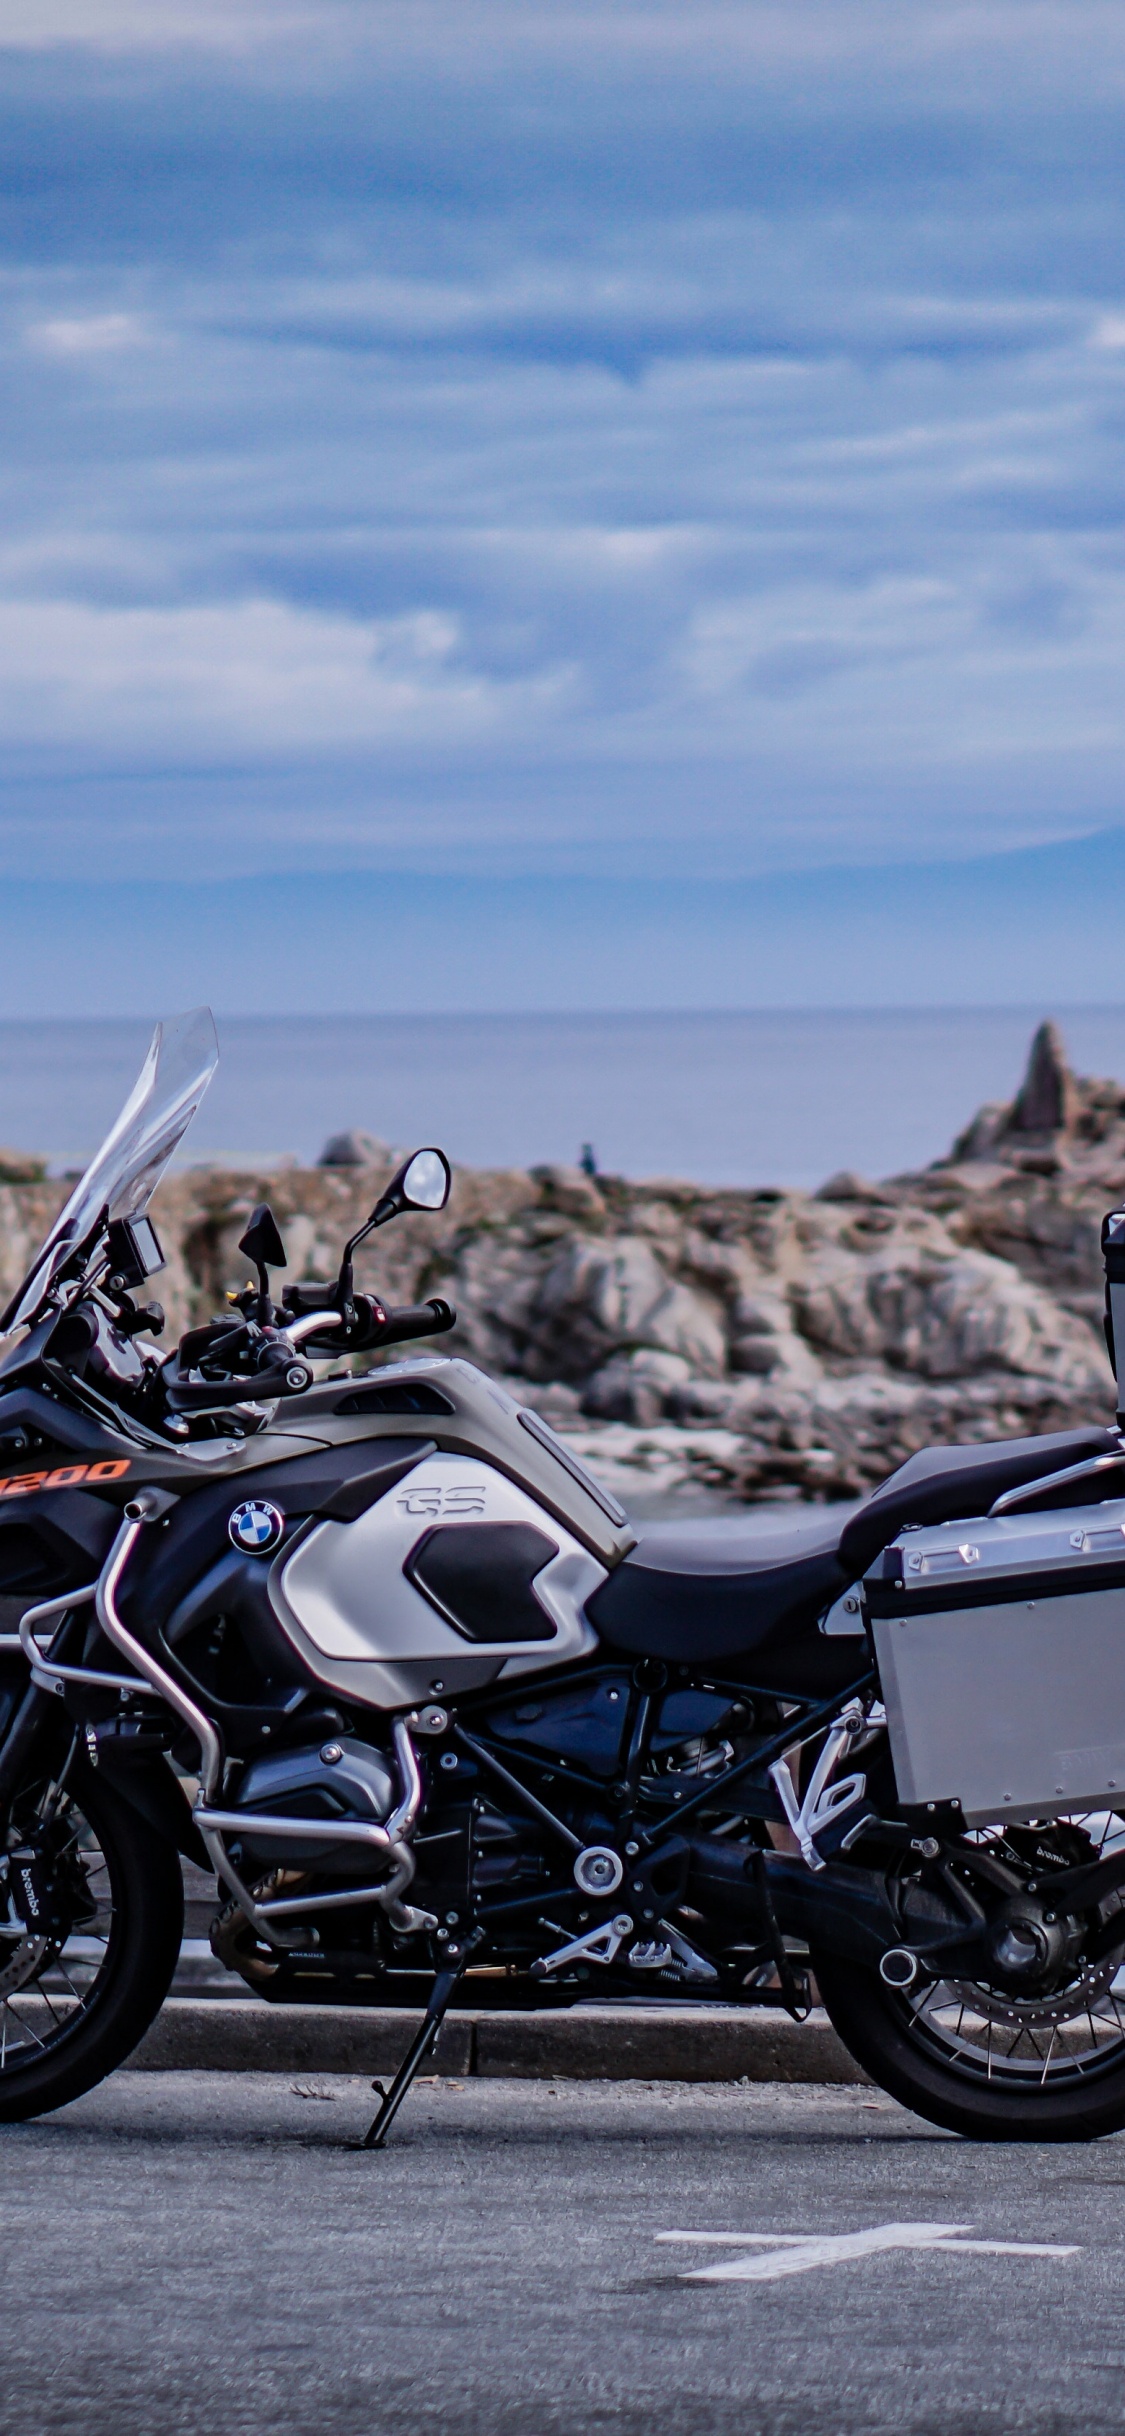 Motocicleta Negra y Plateada Estacionada en un Muelle de Madera Marrón Durante el Día. Wallpaper in 1125x2436 Resolution